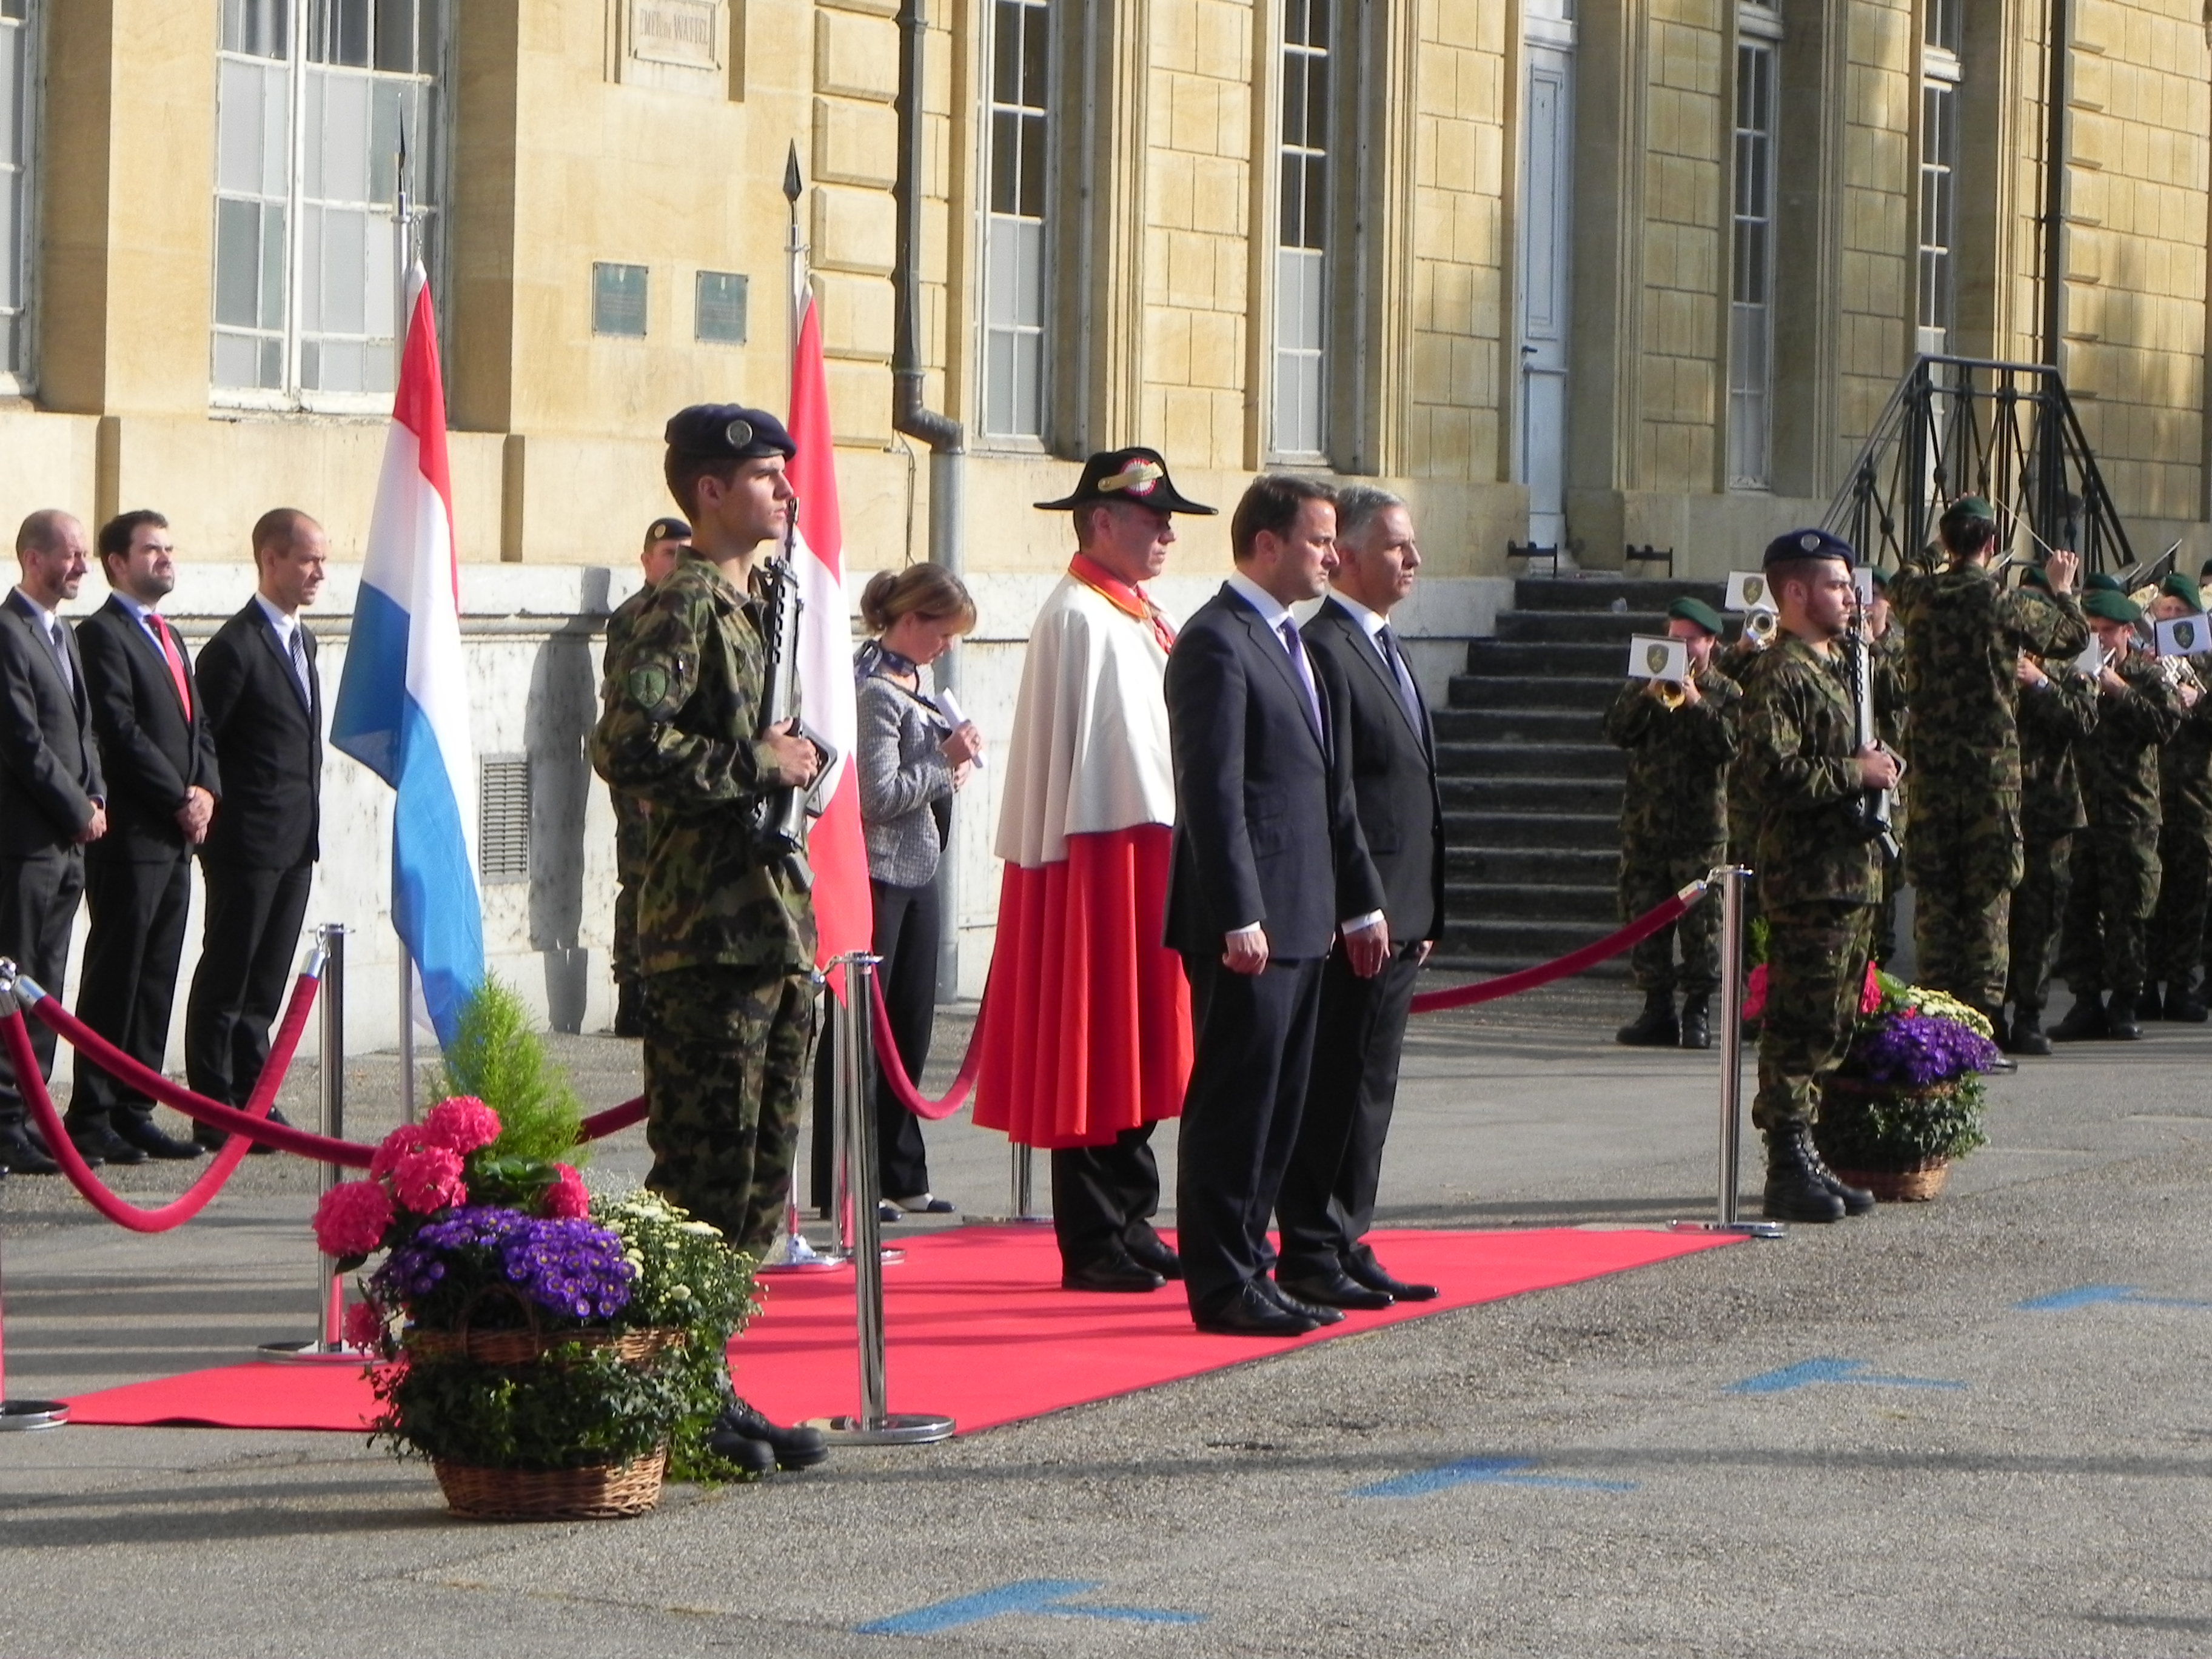 Le premier ministre Xavier Bettel a été reçu avec les honneurs militaires